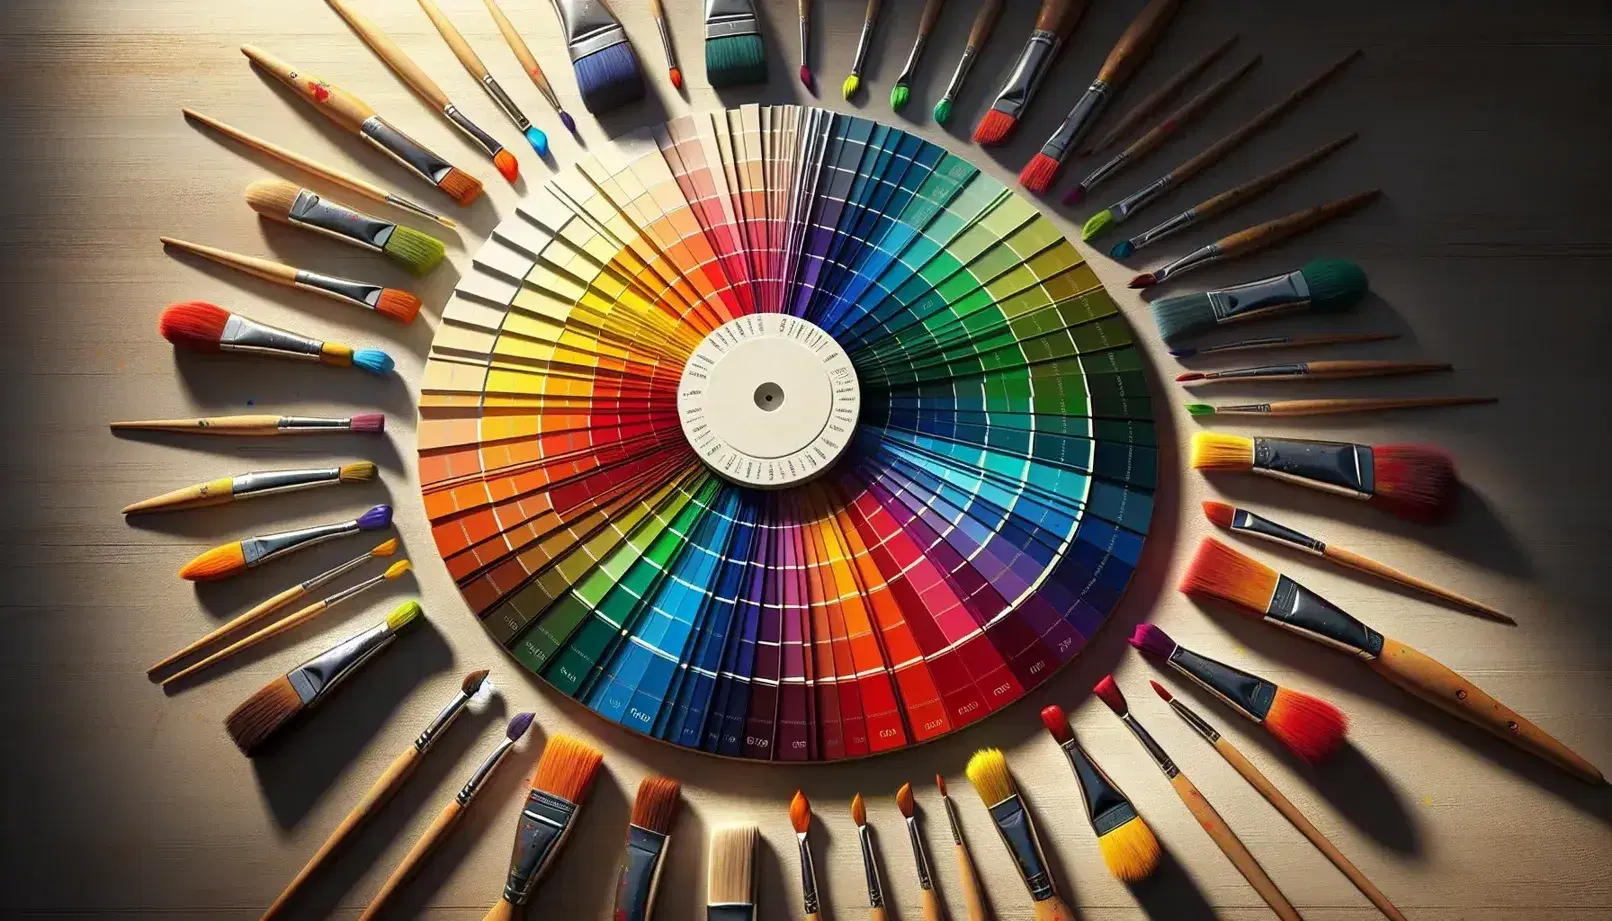 Paleta de colores en forma de rueda con tonos cálidos a fríos y pinceles apuntando al centro sobre superficie neutra, reflejando creatividad y diversidad.